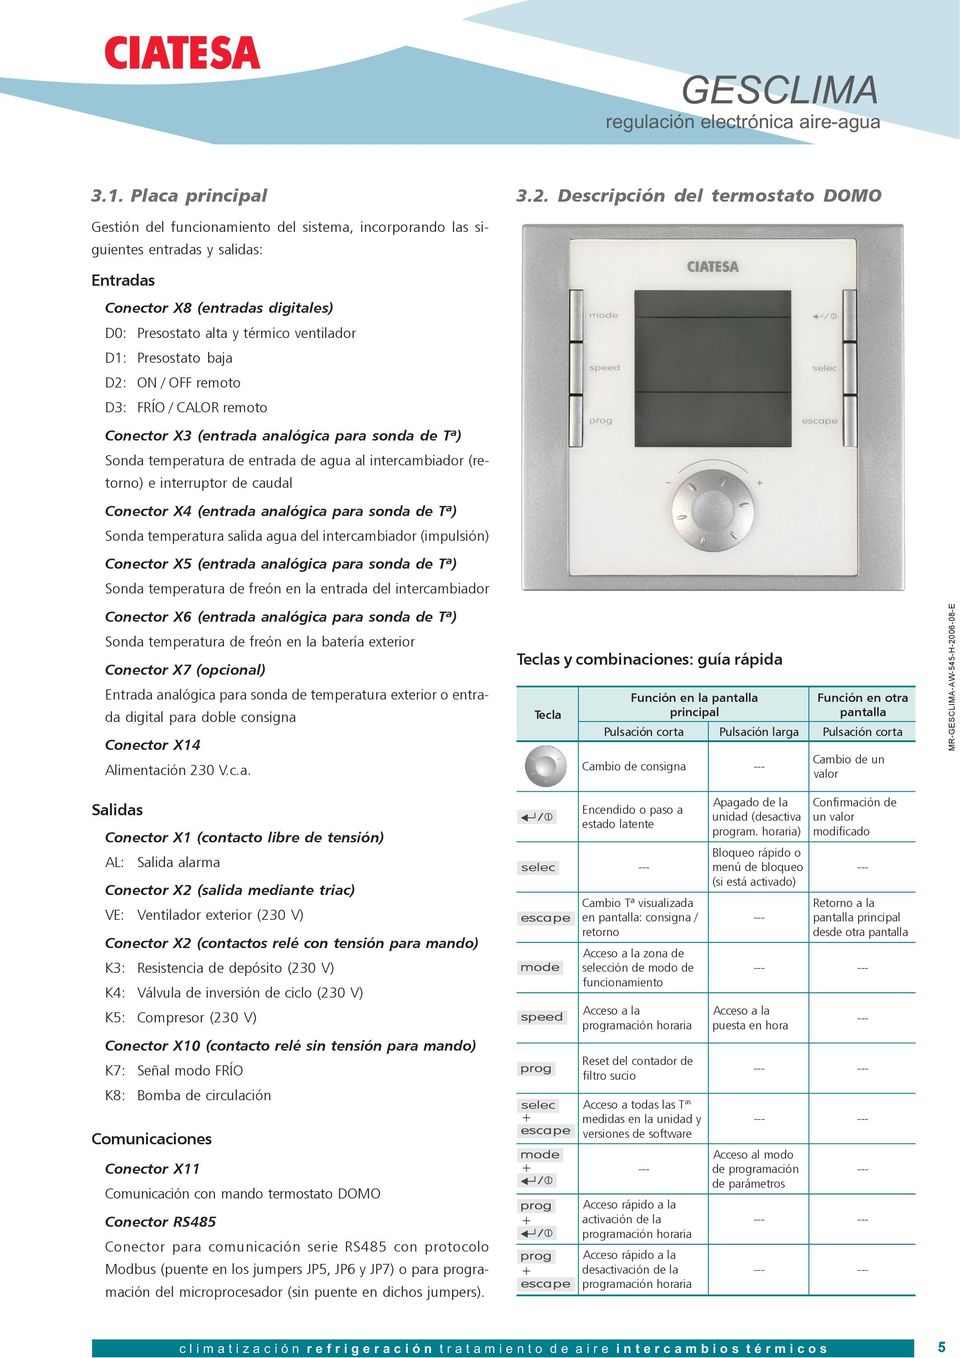 MANUAL DE REGULACIÓN. regulación electrónica GESCLIMA. equipos aire-agua Nº 545 H 2006 / - PDF Free Download